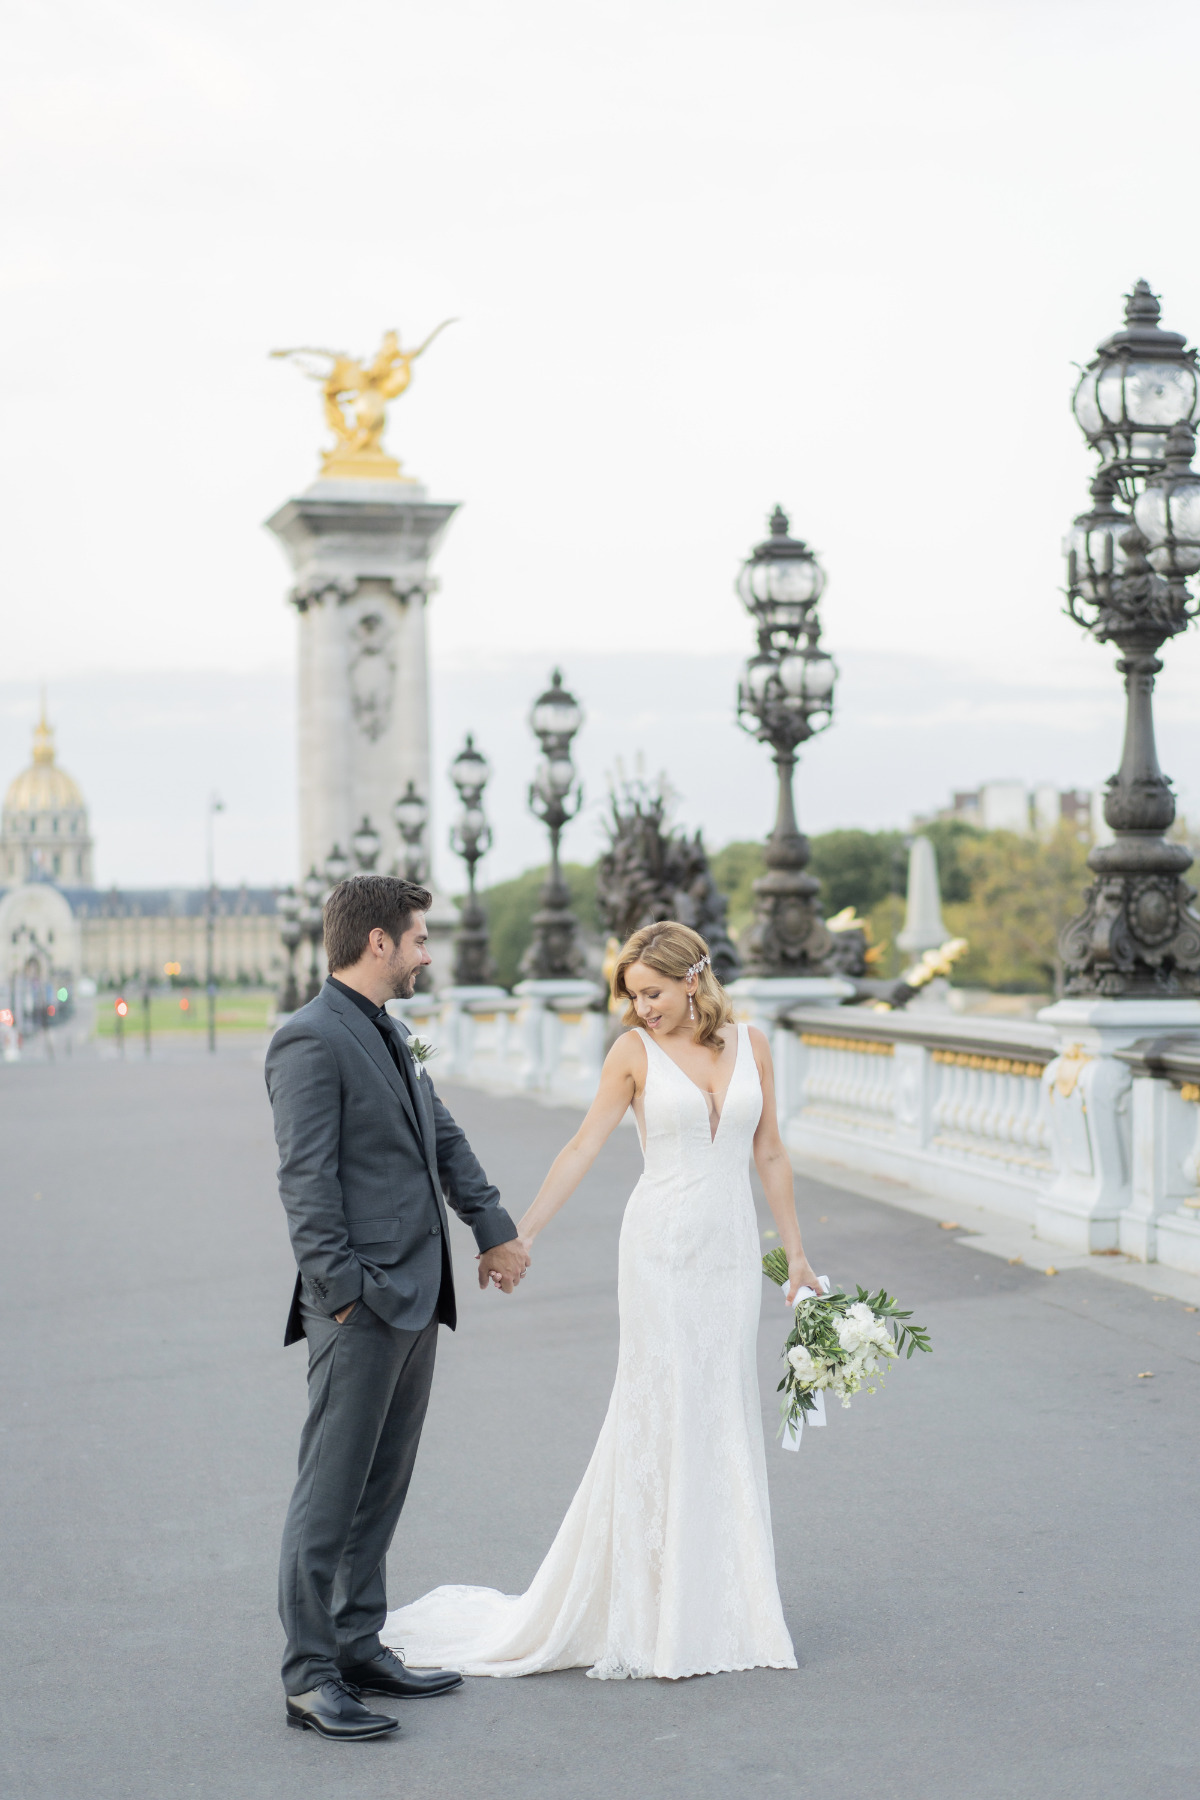 A Romantic Parisian Elopement That Almost Didn't Happen